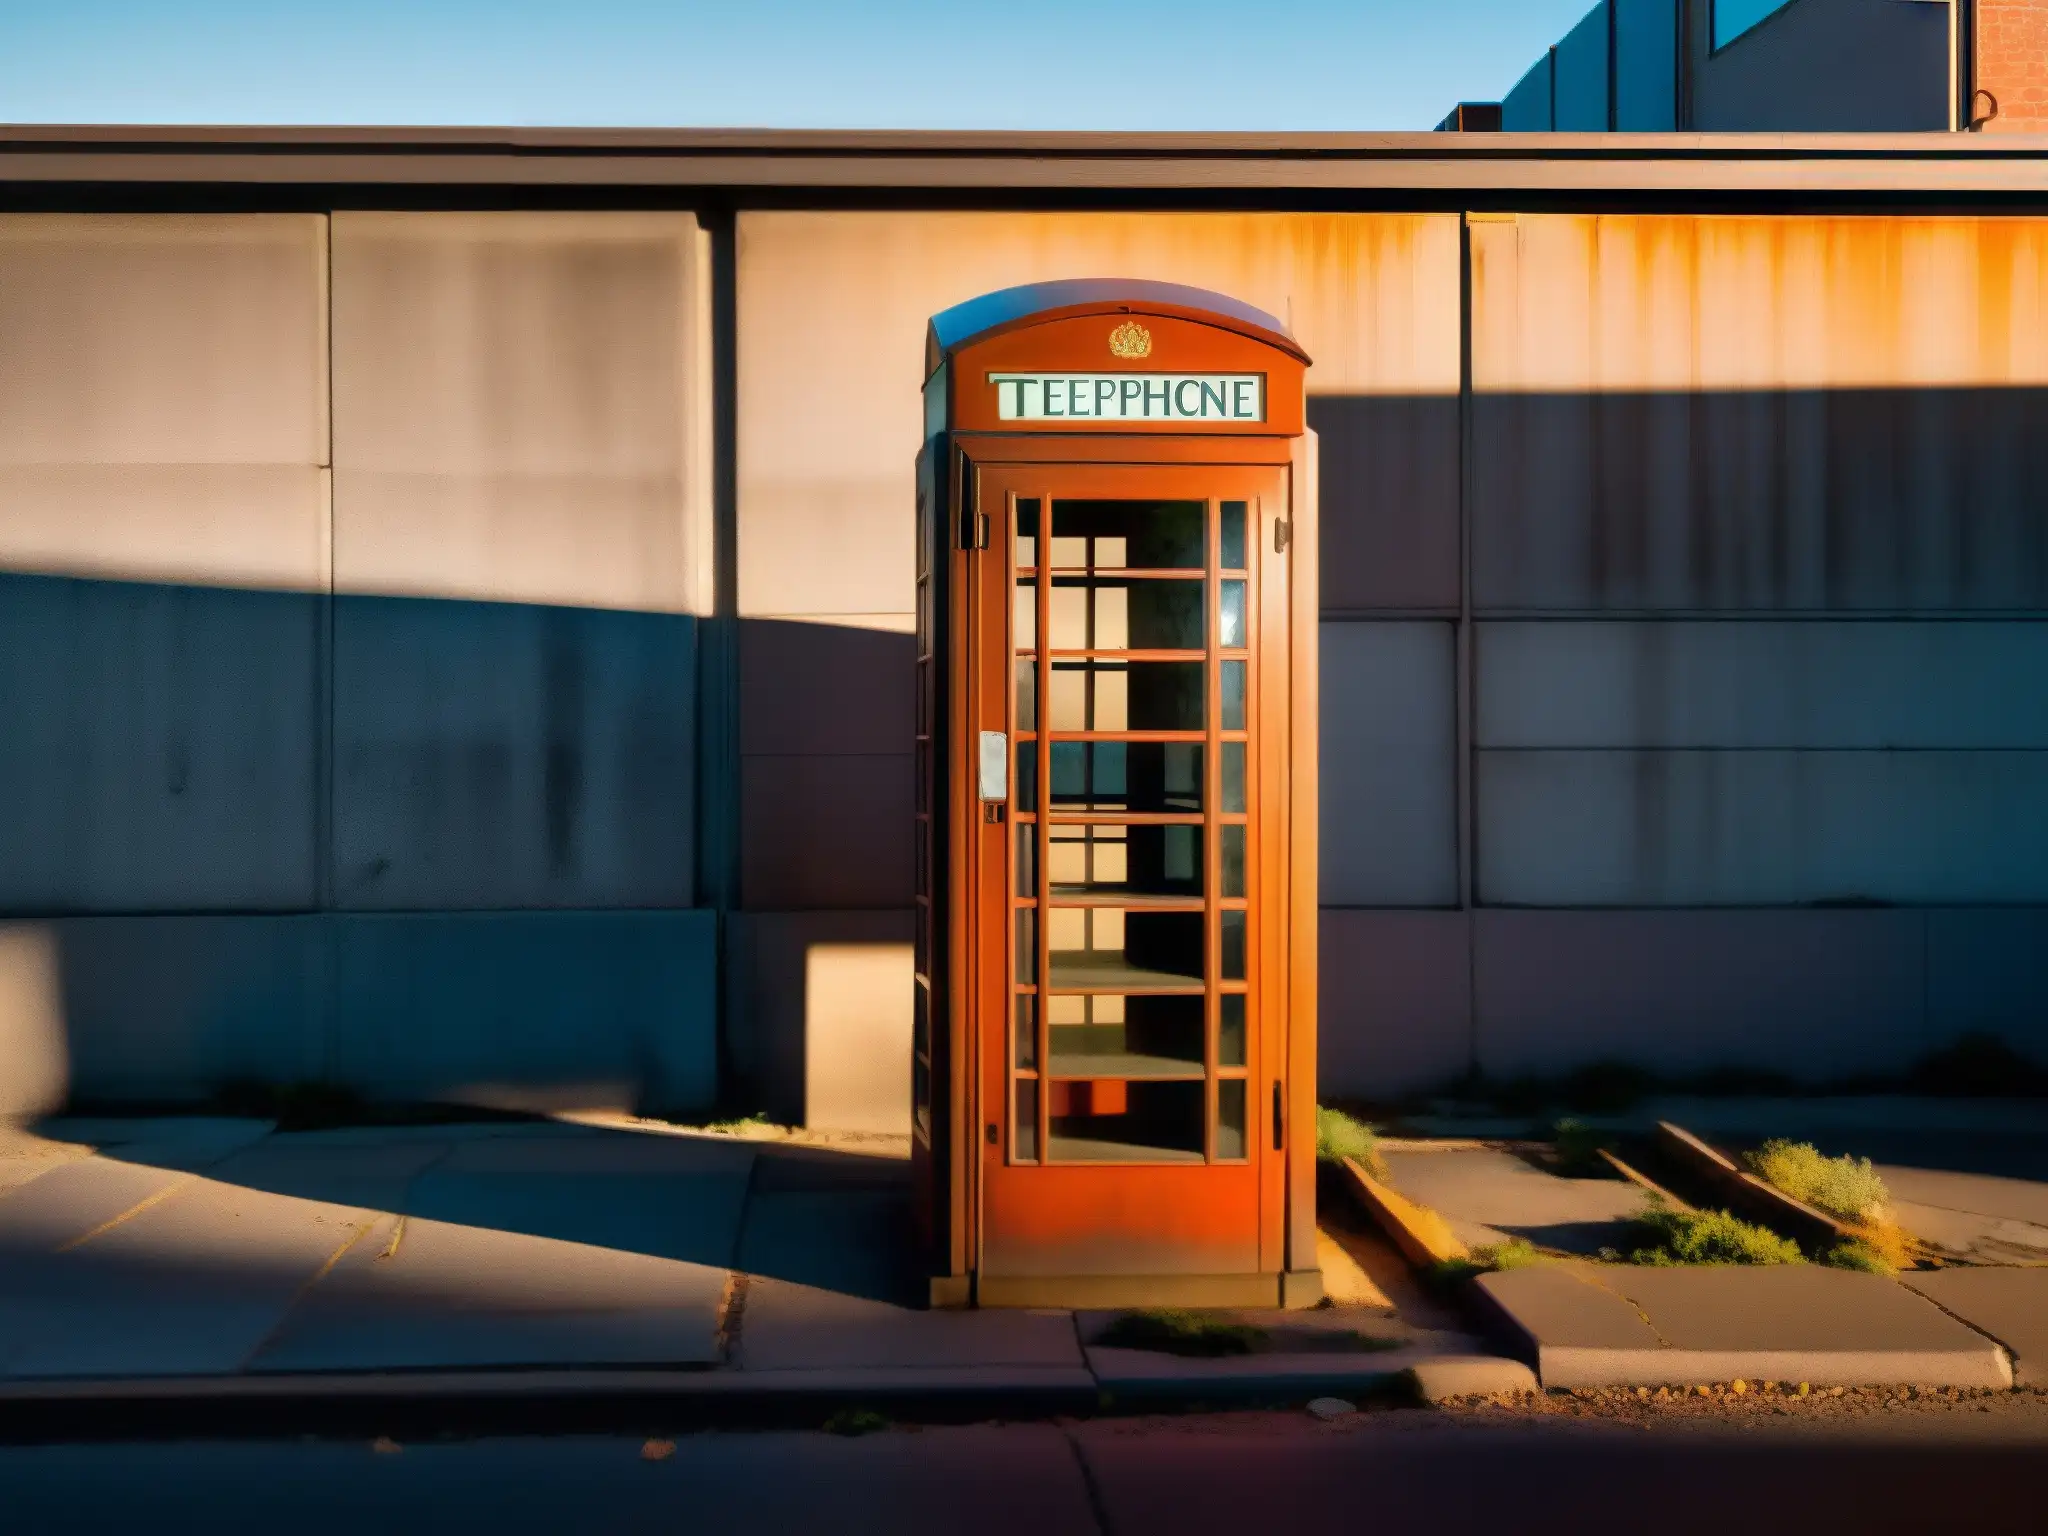 Una cabina telefónica antigua y desgastada en una calle desierta al anochecer, evocando misterio y la verdad sobre maldición números telefónicos